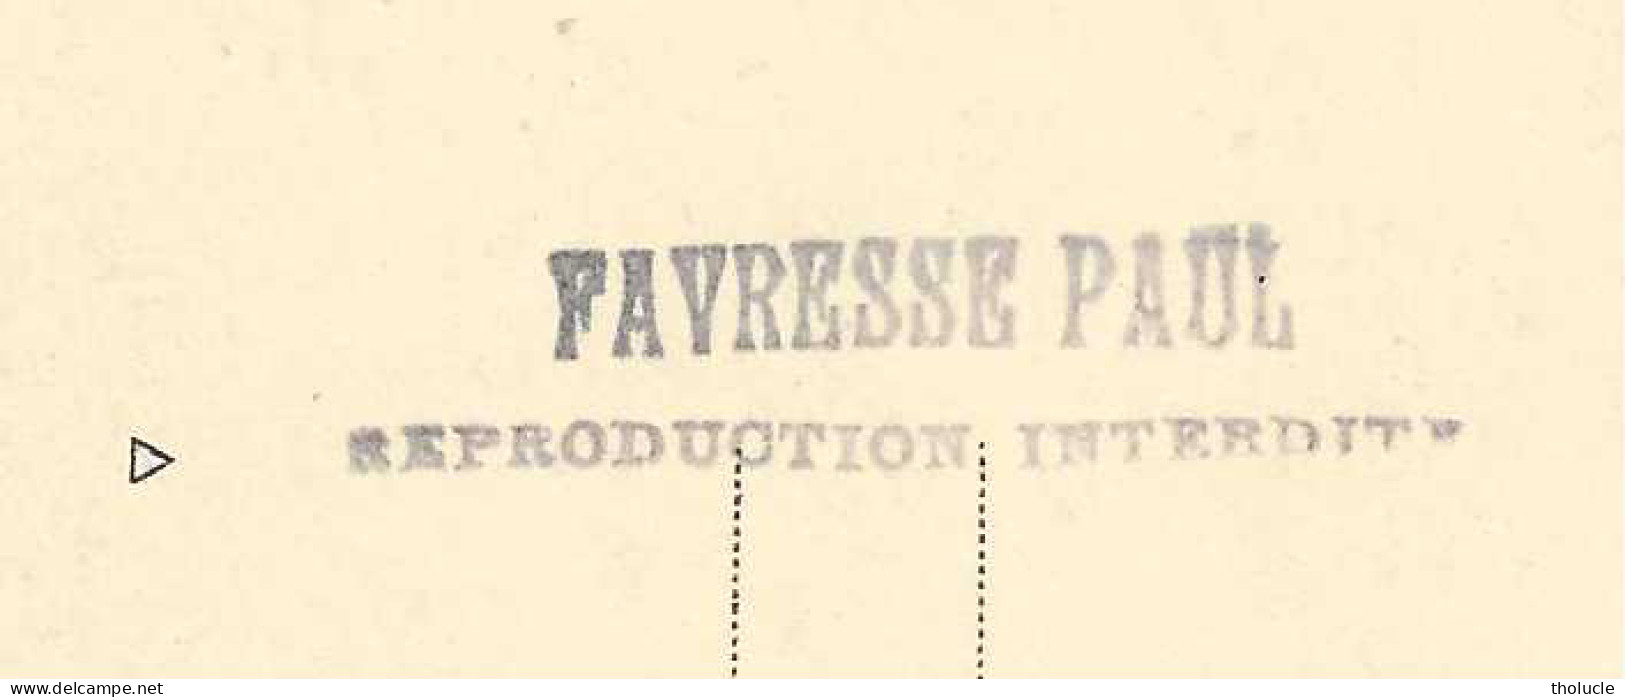 Carte-Photo  Signée-Paul Favresse-Belgique-+/-1925-S.M.Elisabeth, Reine Des Belges-Manteau-Robe-Chapeau -Mode-Fleurs - Moda